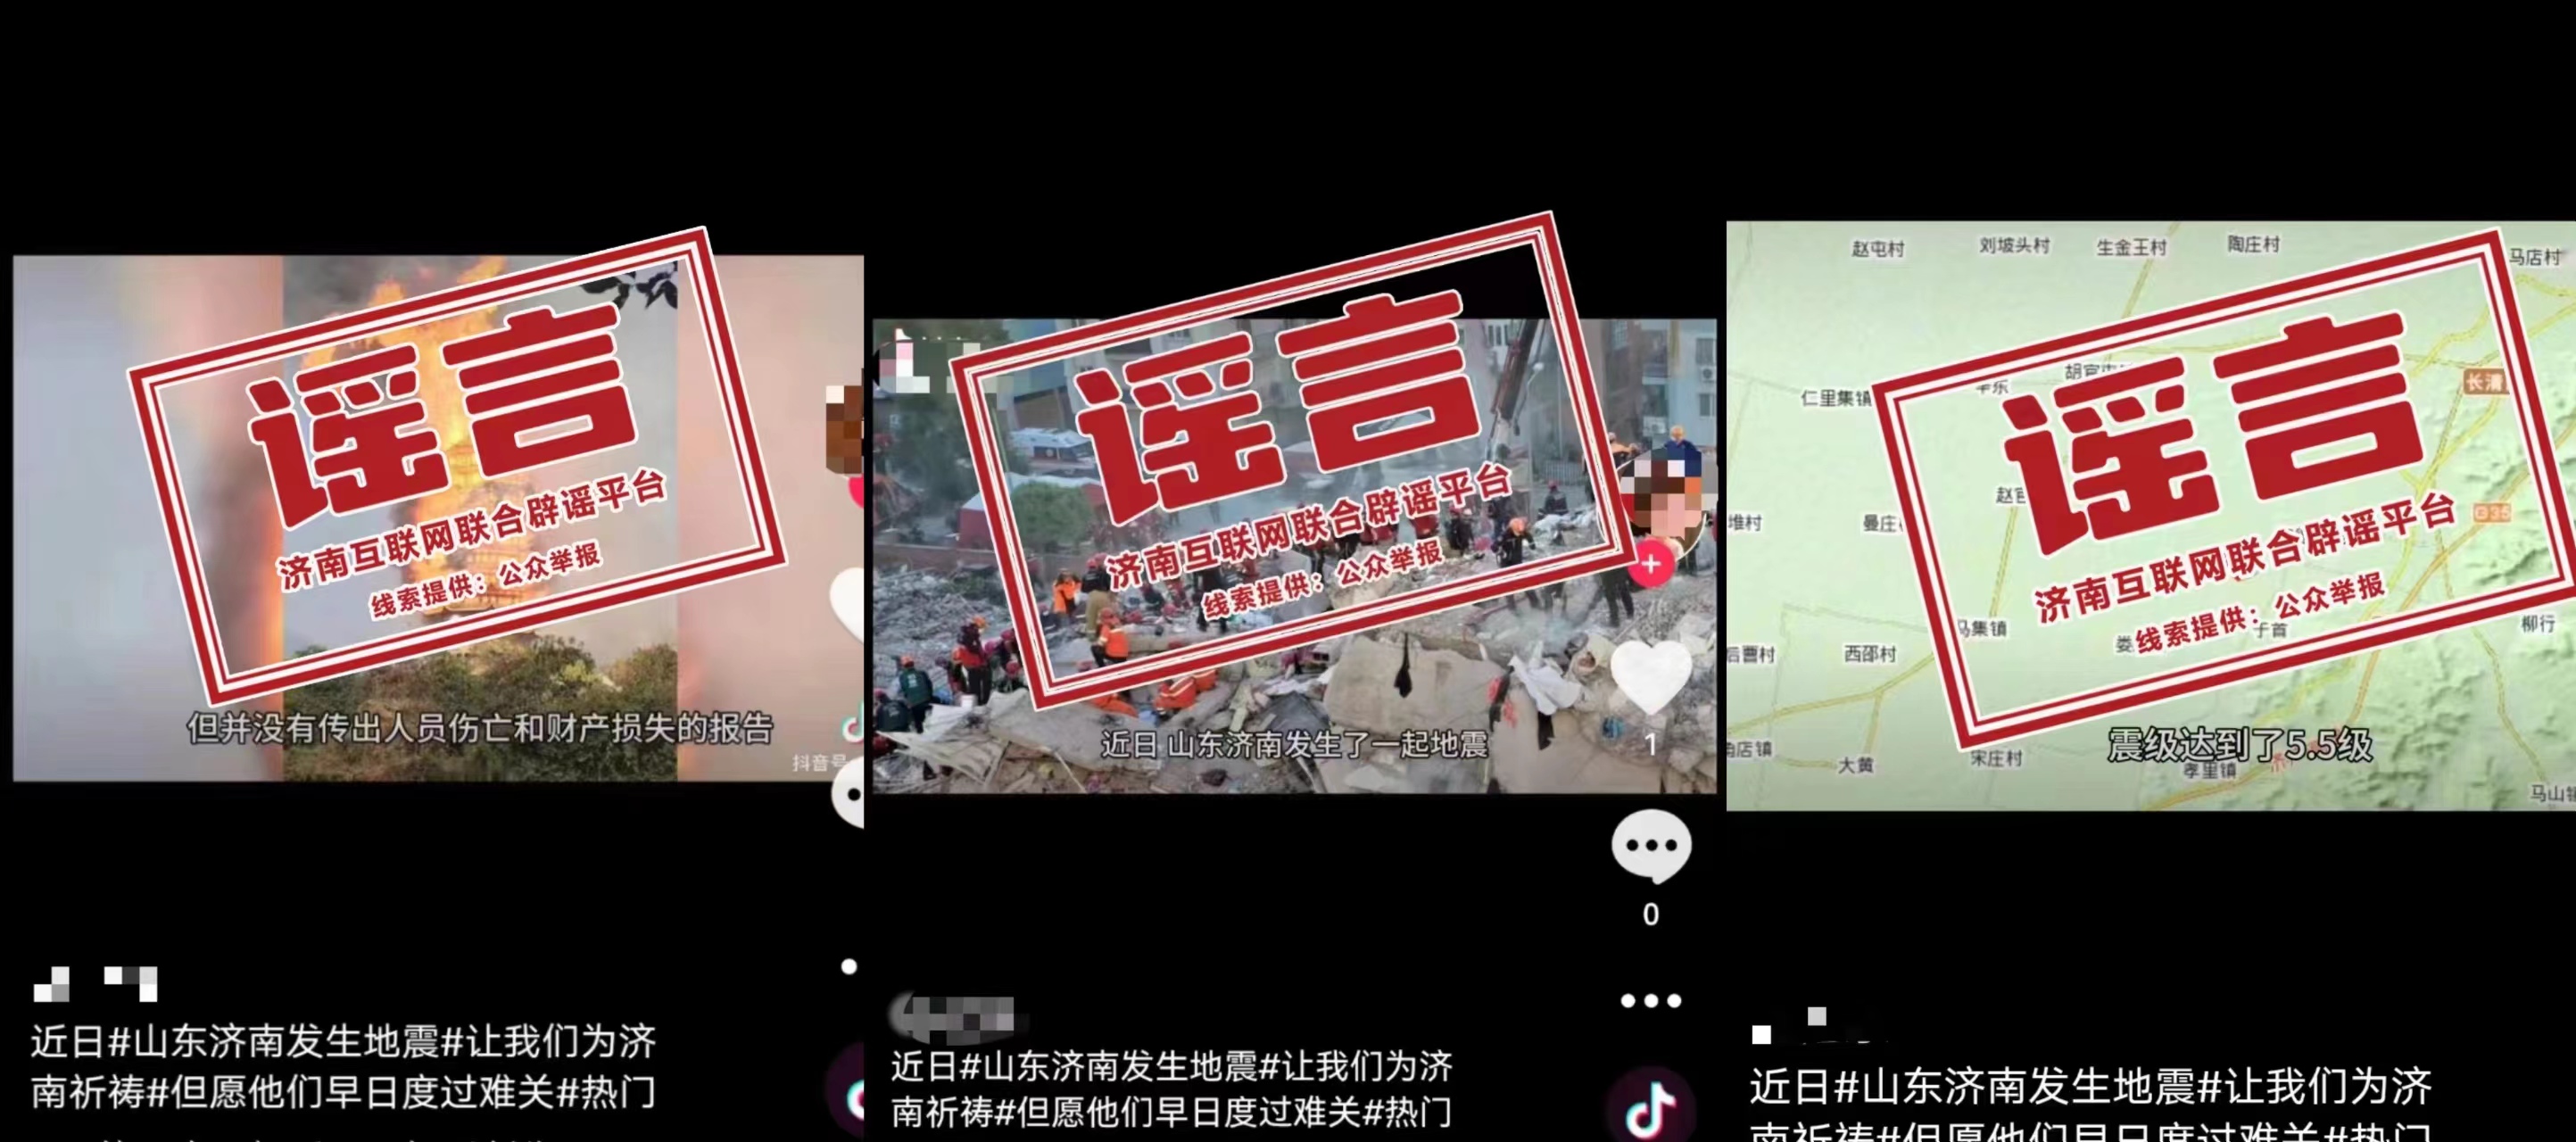 发布谣言的社交平台账号内容 图源
：中国互联网联合辟谣平台